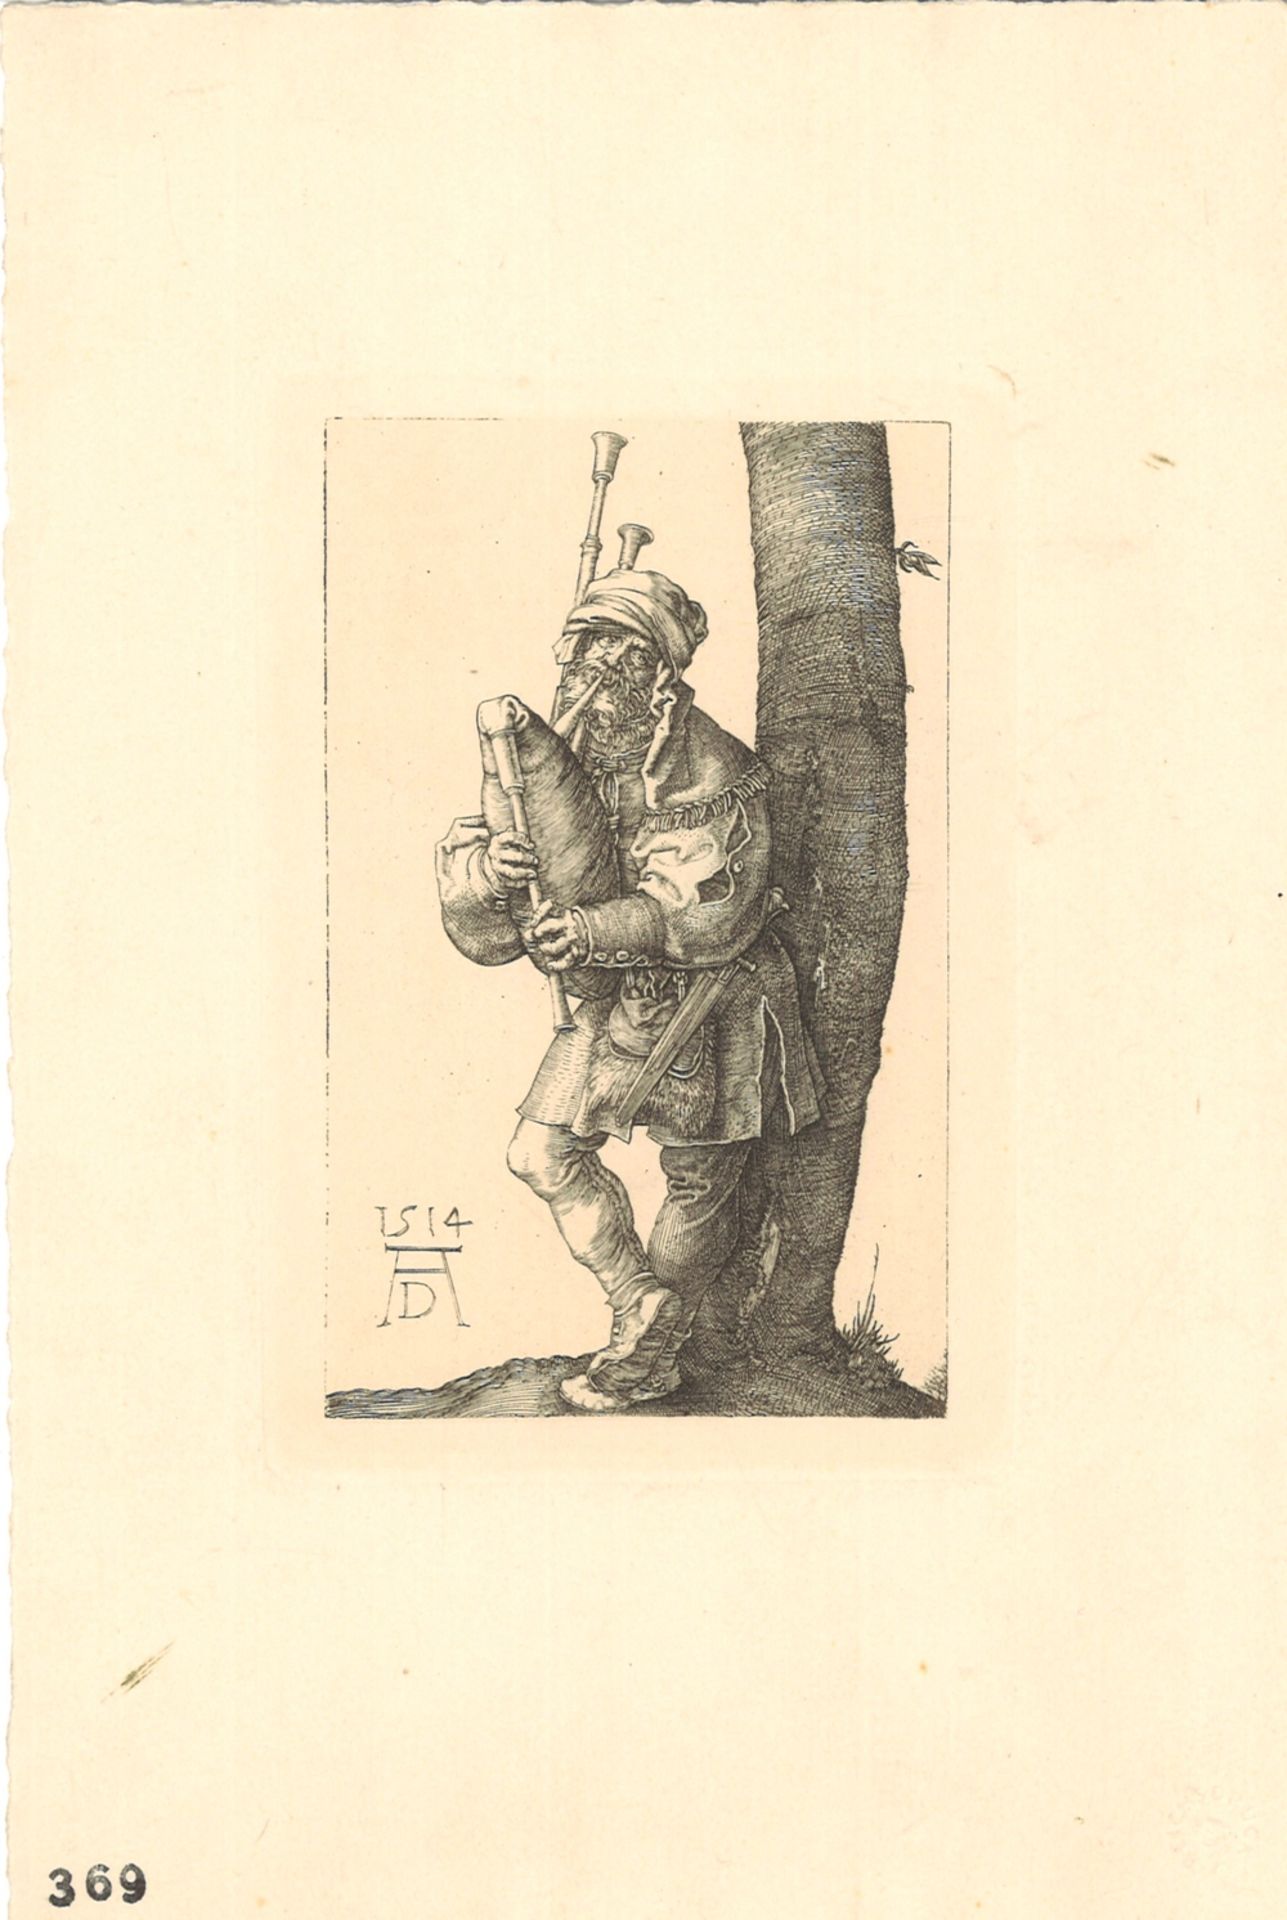 Druck "Der Dudelsackspieler" von Albrecht Dürer, 1514, Monogramm links unten, Stempel auf der